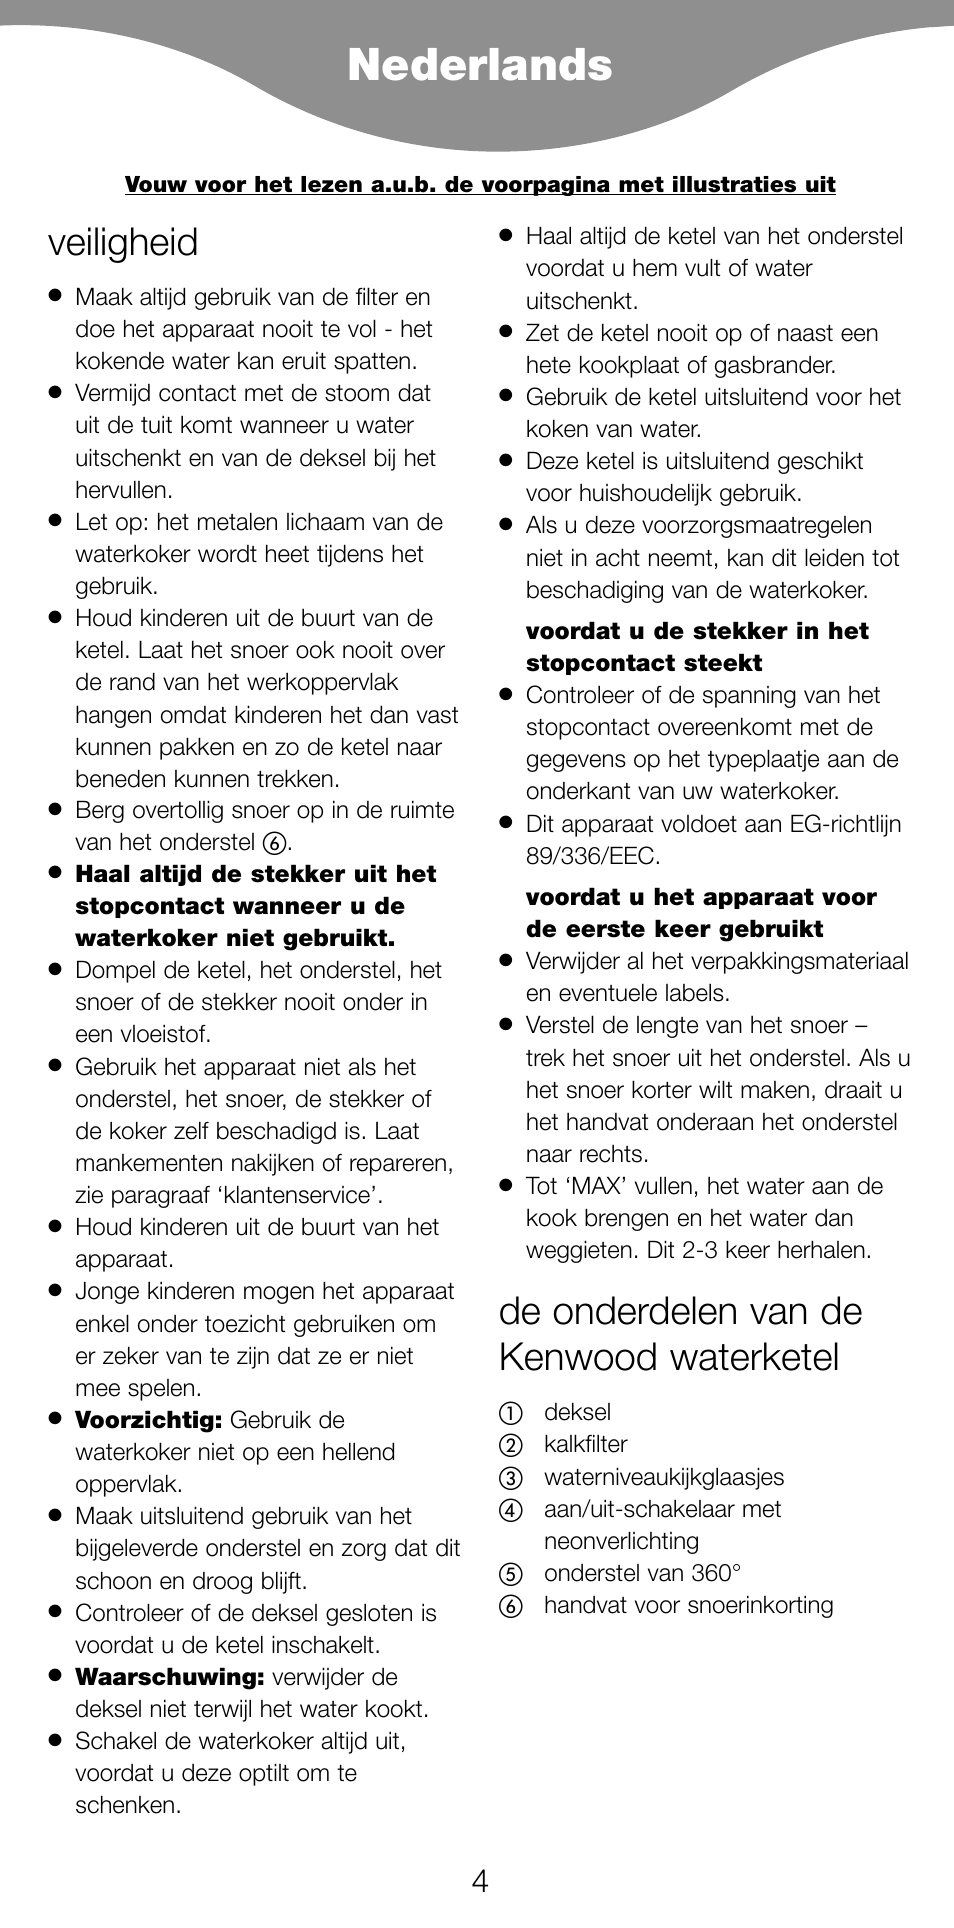 Nederlands, Veiligheid, De onderdelen van de kenwood waterketel | Kenwood SJ900 User Manual | Page 7 / 48